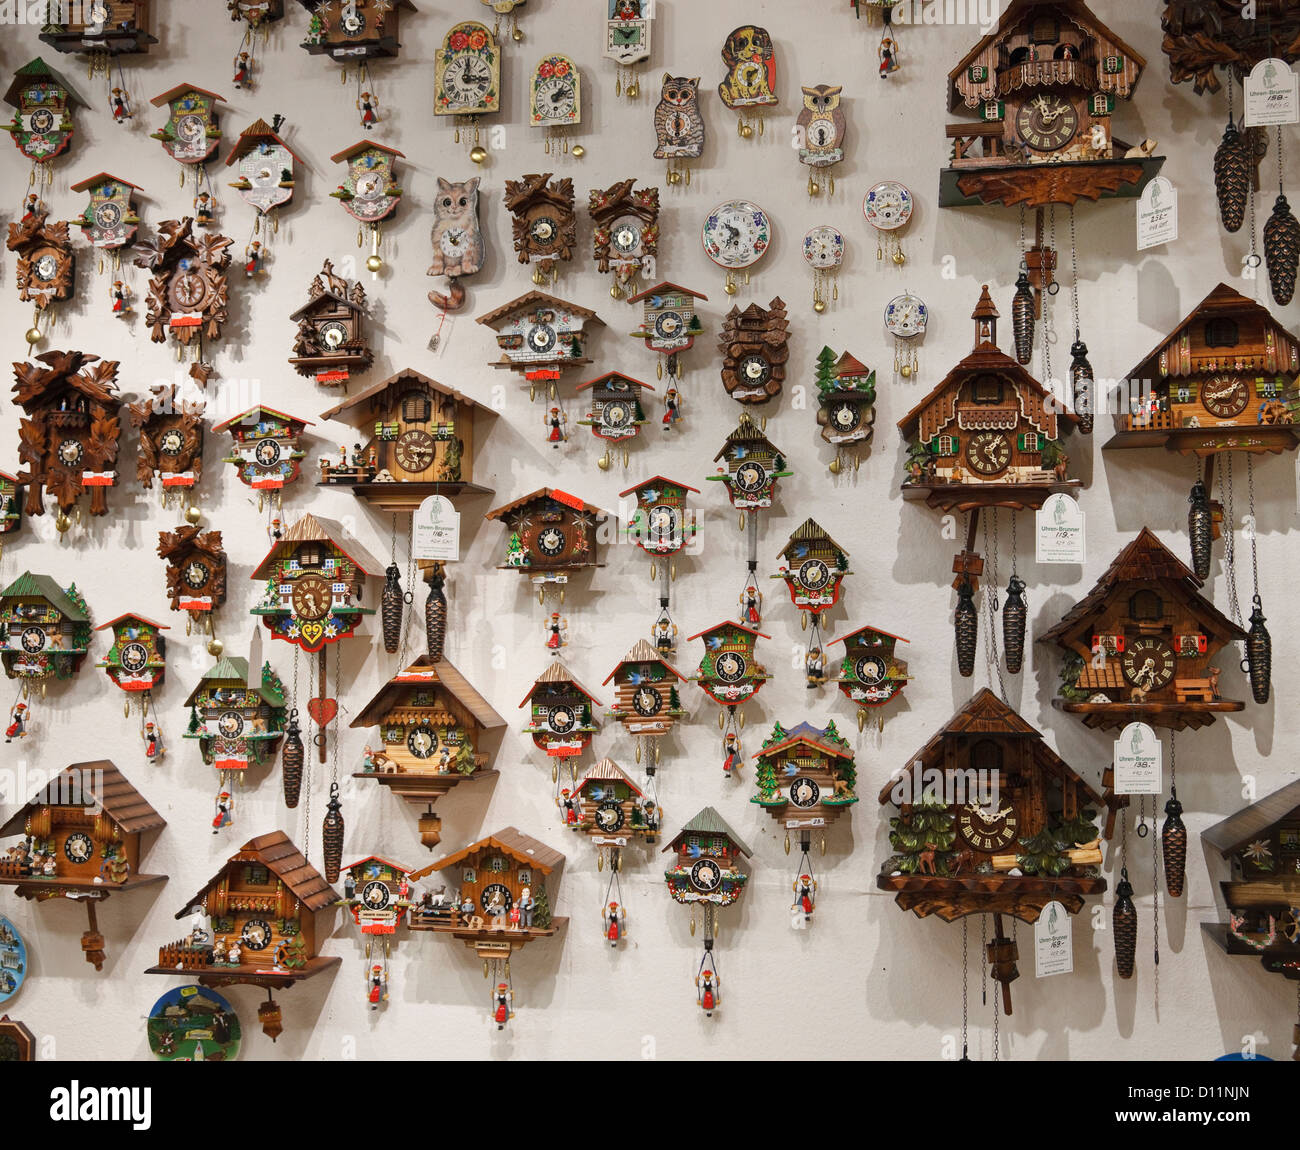 Wand-Display von Kuckucksuhren zu verkaufen in einem Souvenirshop in Deutschland Stockfoto